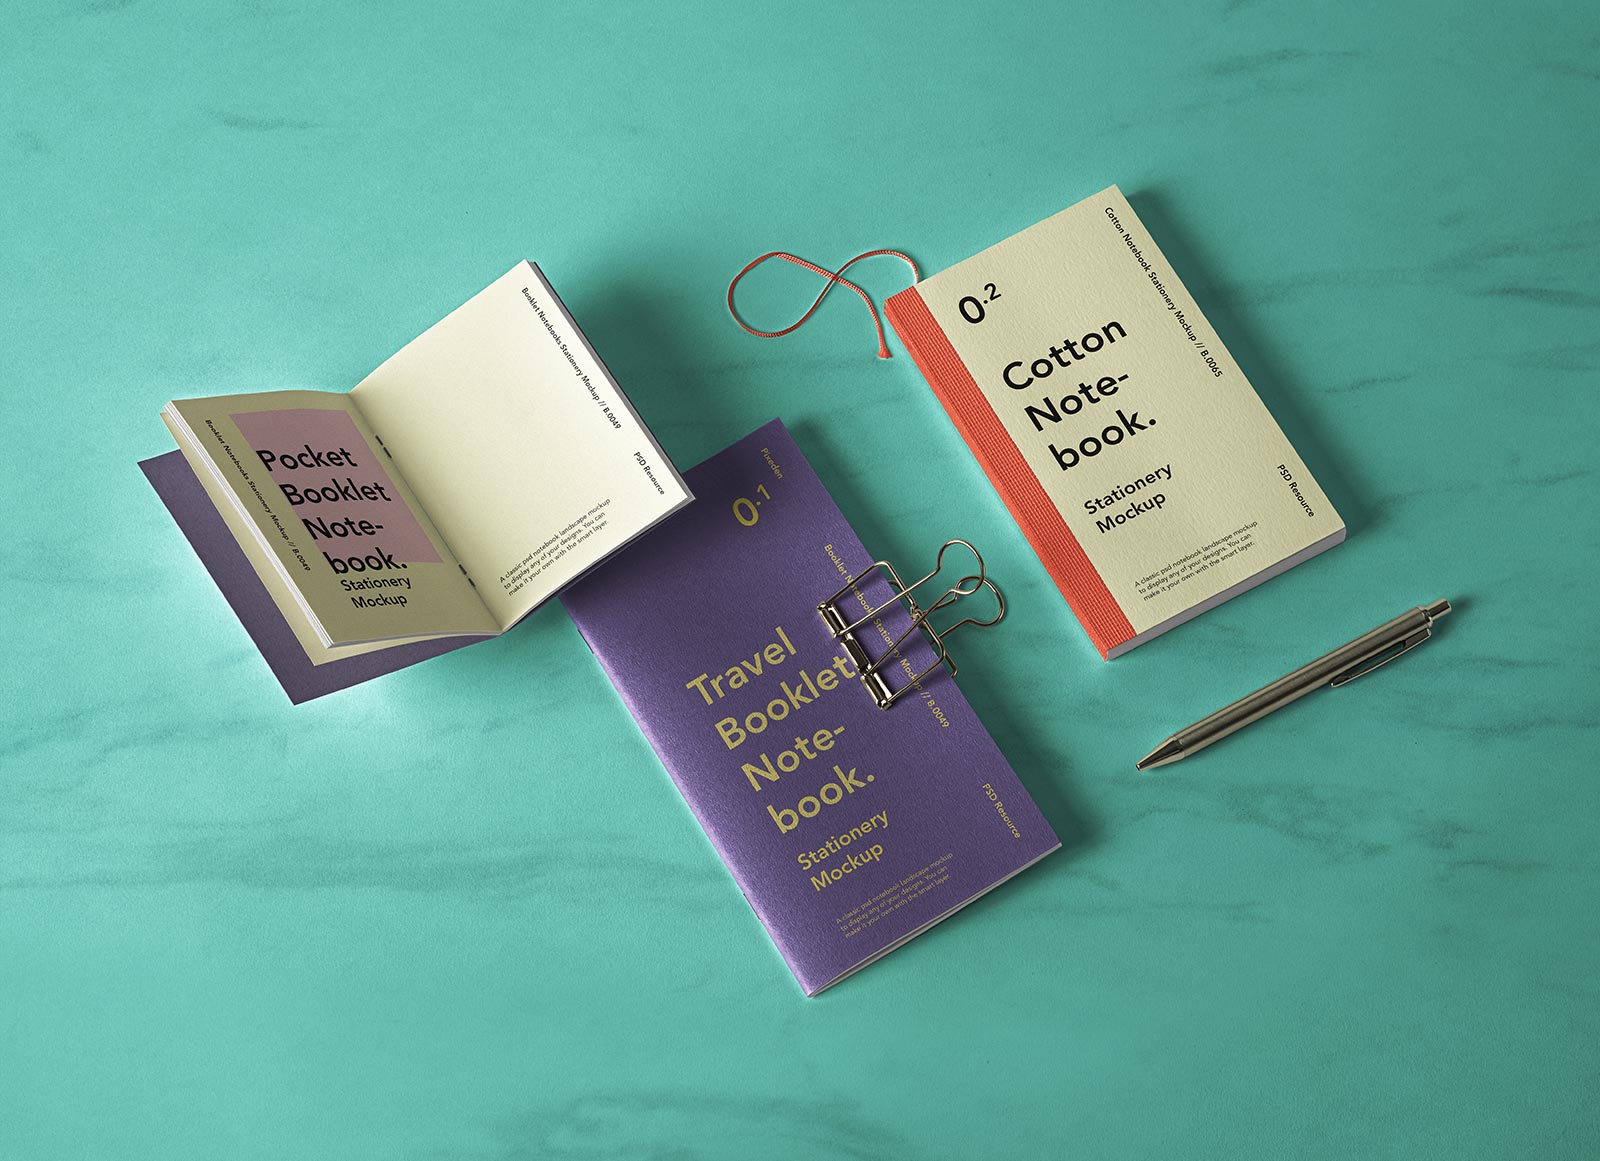 Cuaderno de algodón, folleto de bolsillo y literatura de viajes Mockup de libros